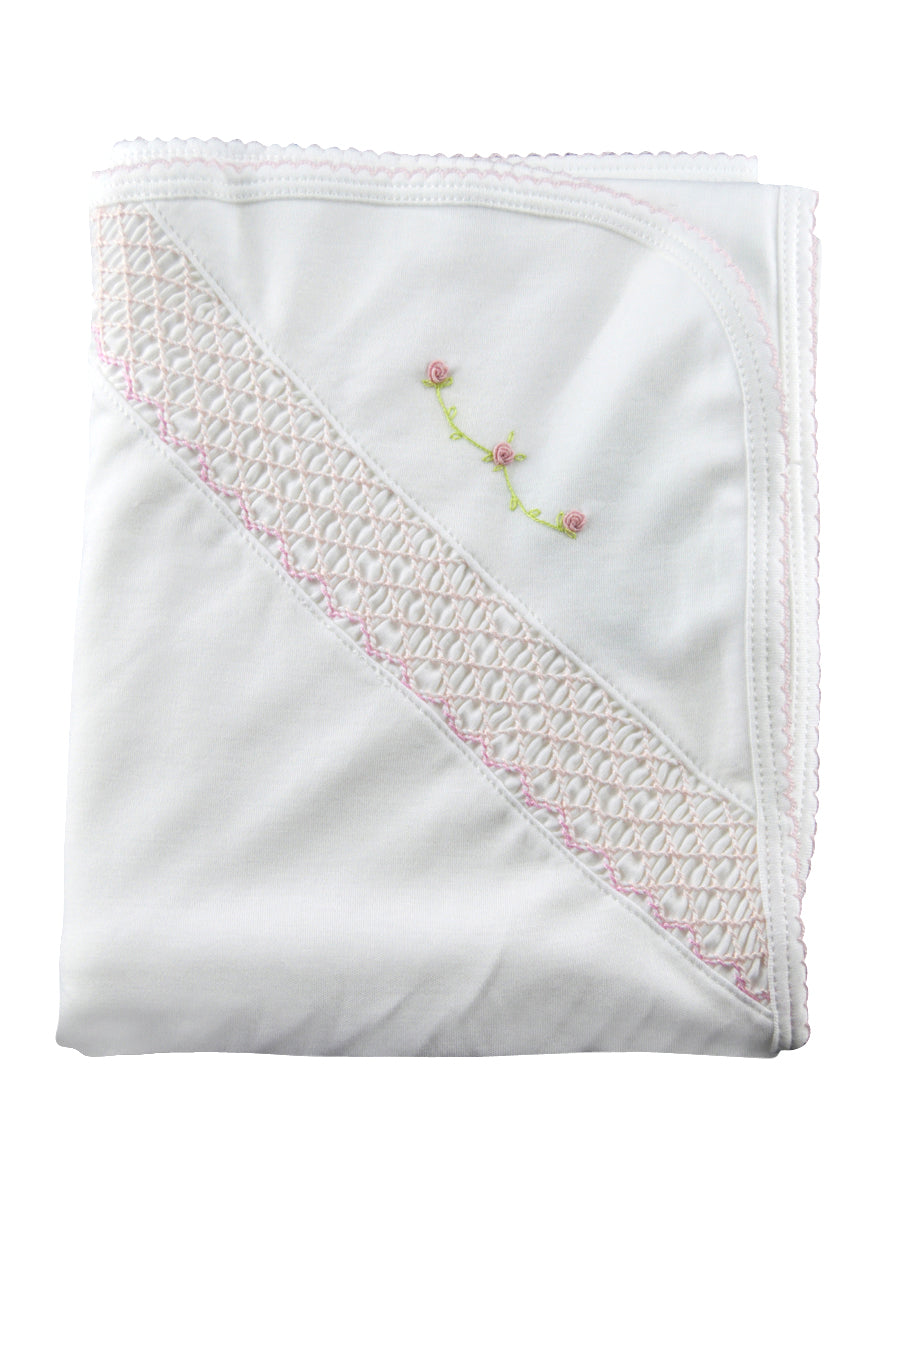 White Girl Smocked Blanket W/ Pink Rose Vines - Little Threads Inc. Children's Clothing